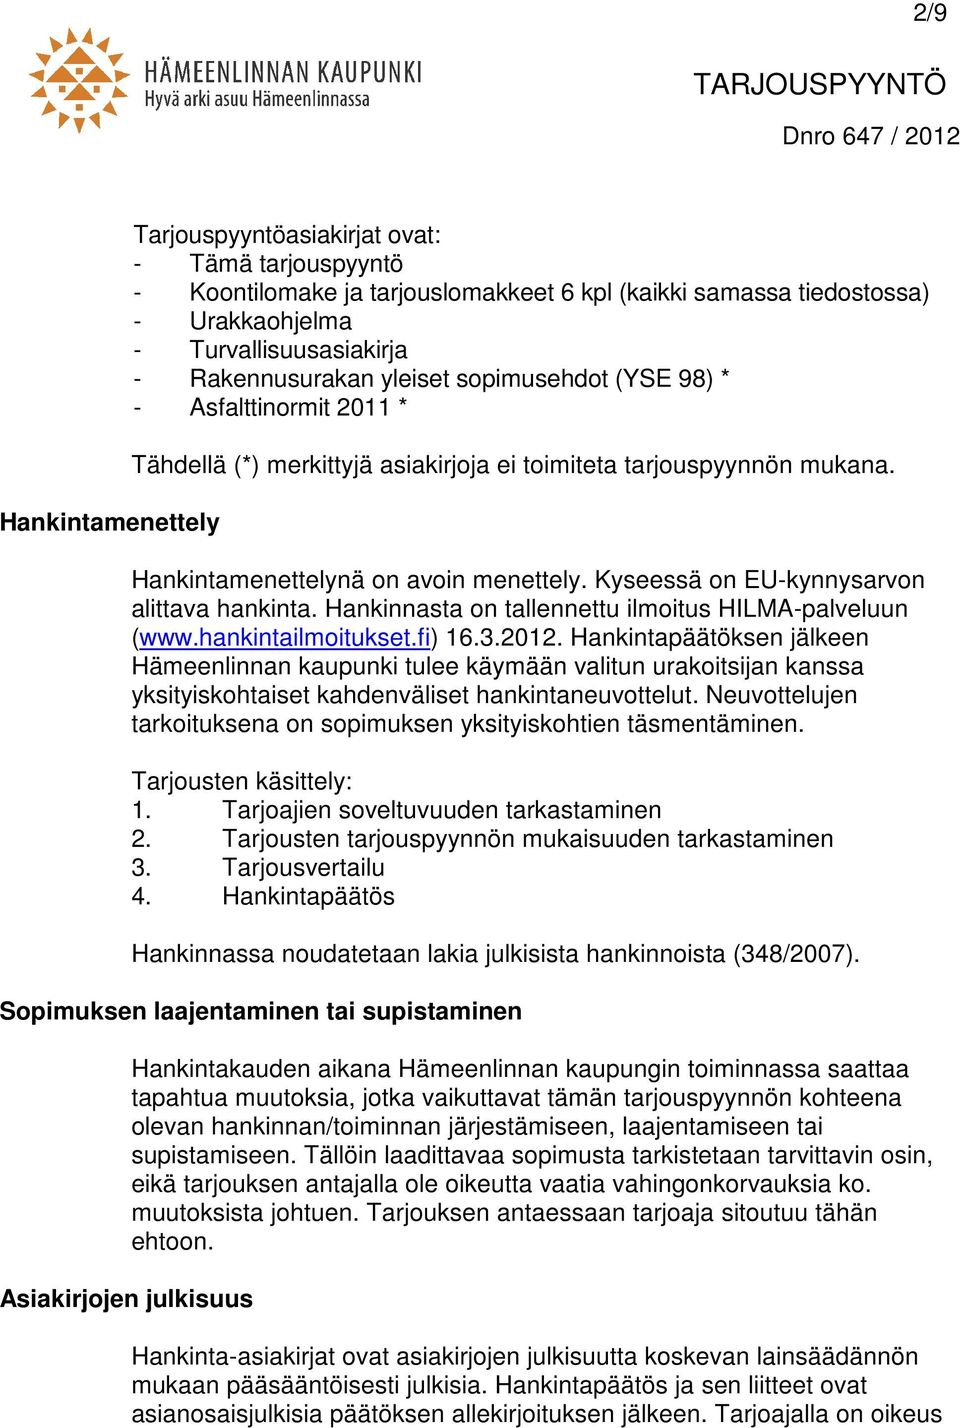 Kyseessä on EU-kynnysarvon alittava hankinta. Hankinnasta on tallennettu ilmoitus HILMA-palveluun (www.hankintailmoitukset.fi) 16.3.2012.